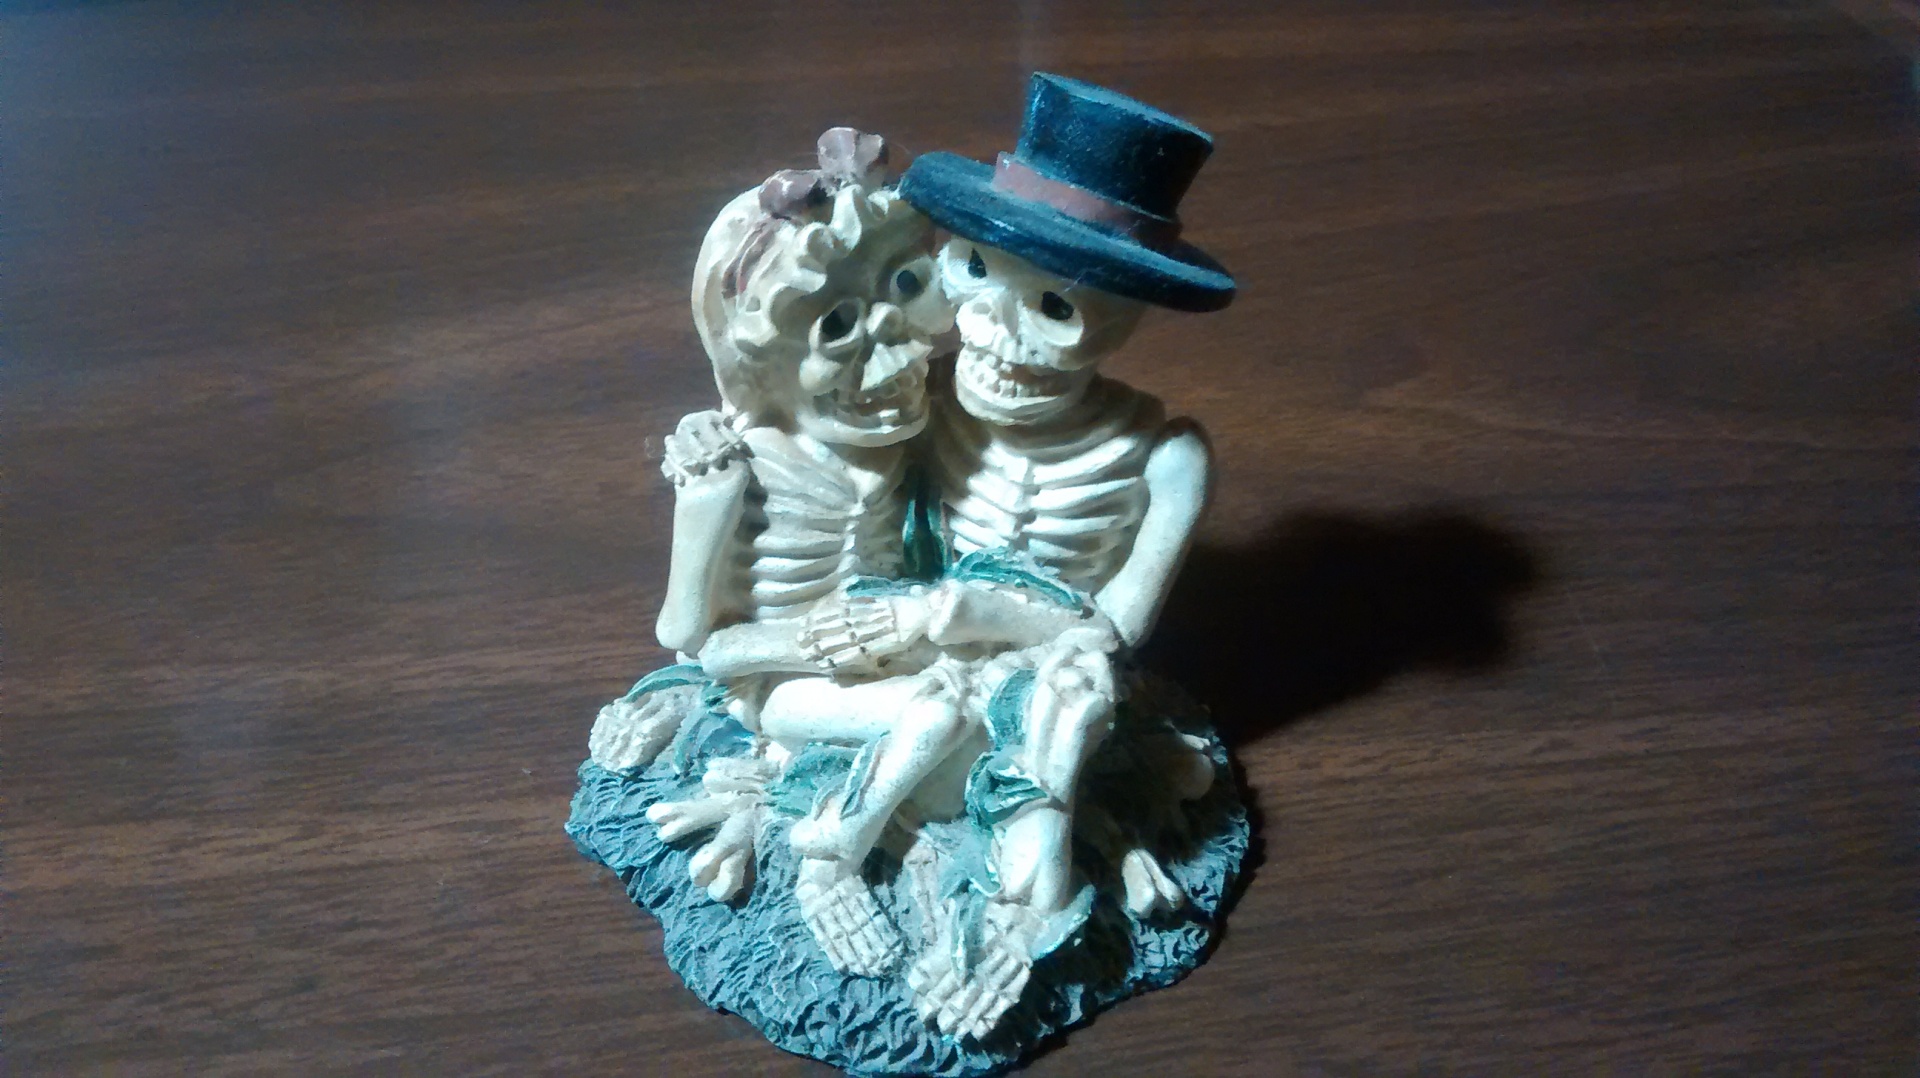 Skeleton Couple